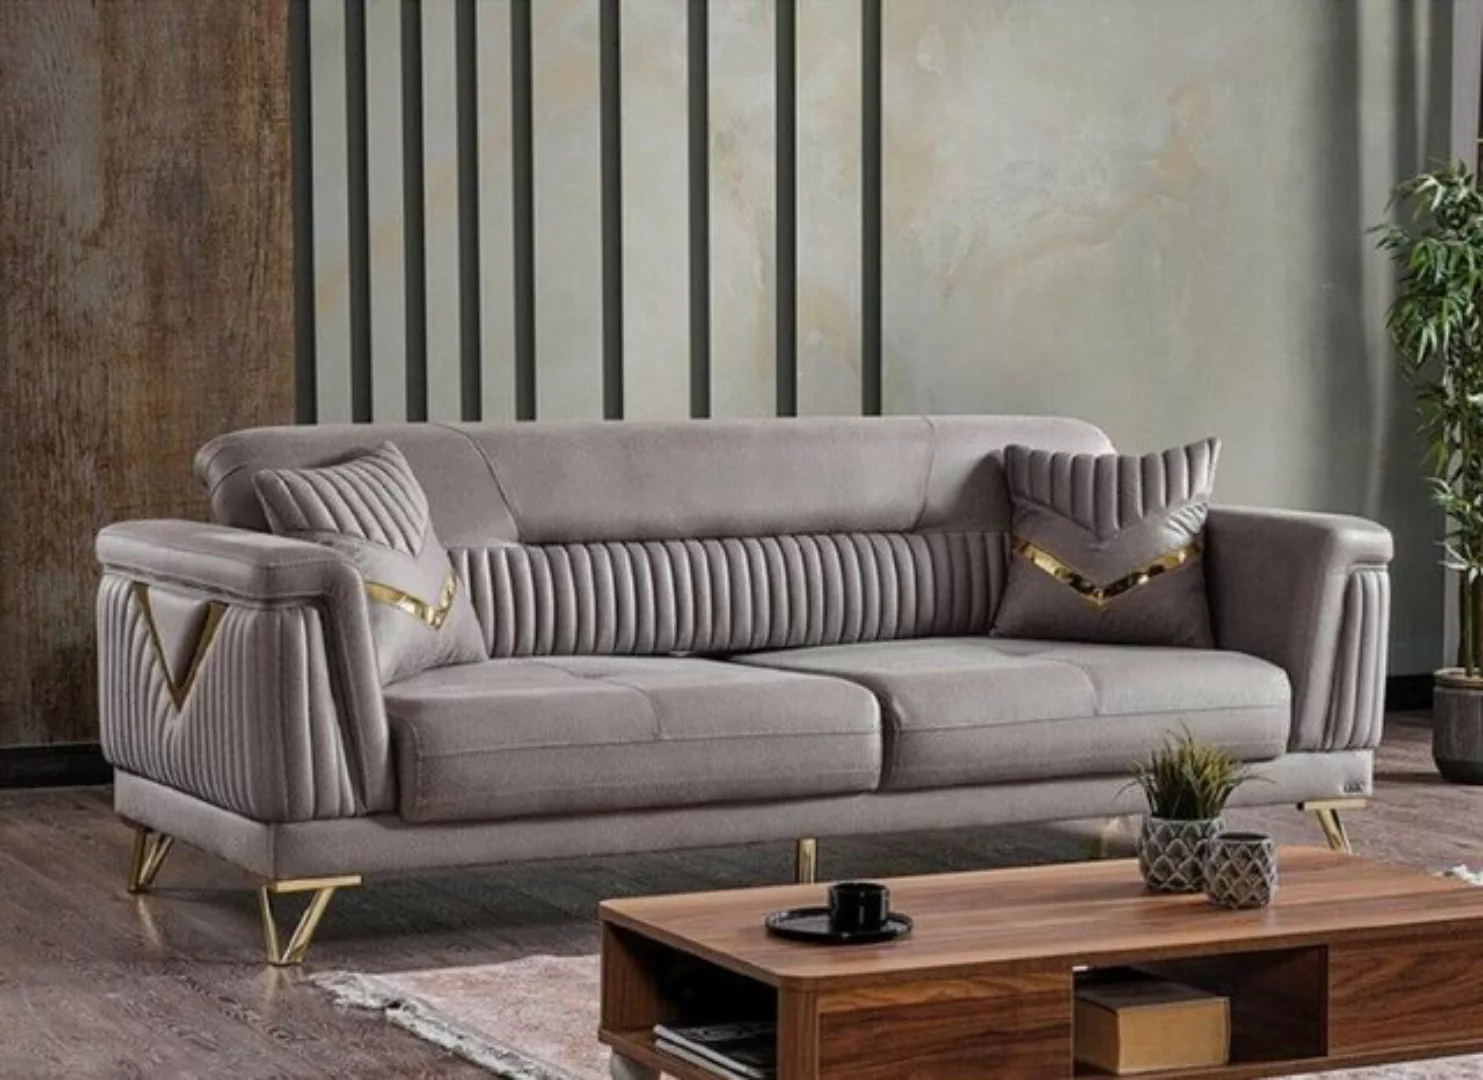 JVmoebel 3-Sitzer Sofa Couch Polster 3 Sitzer Textil Sofas Couchen Wohnzimm günstig online kaufen